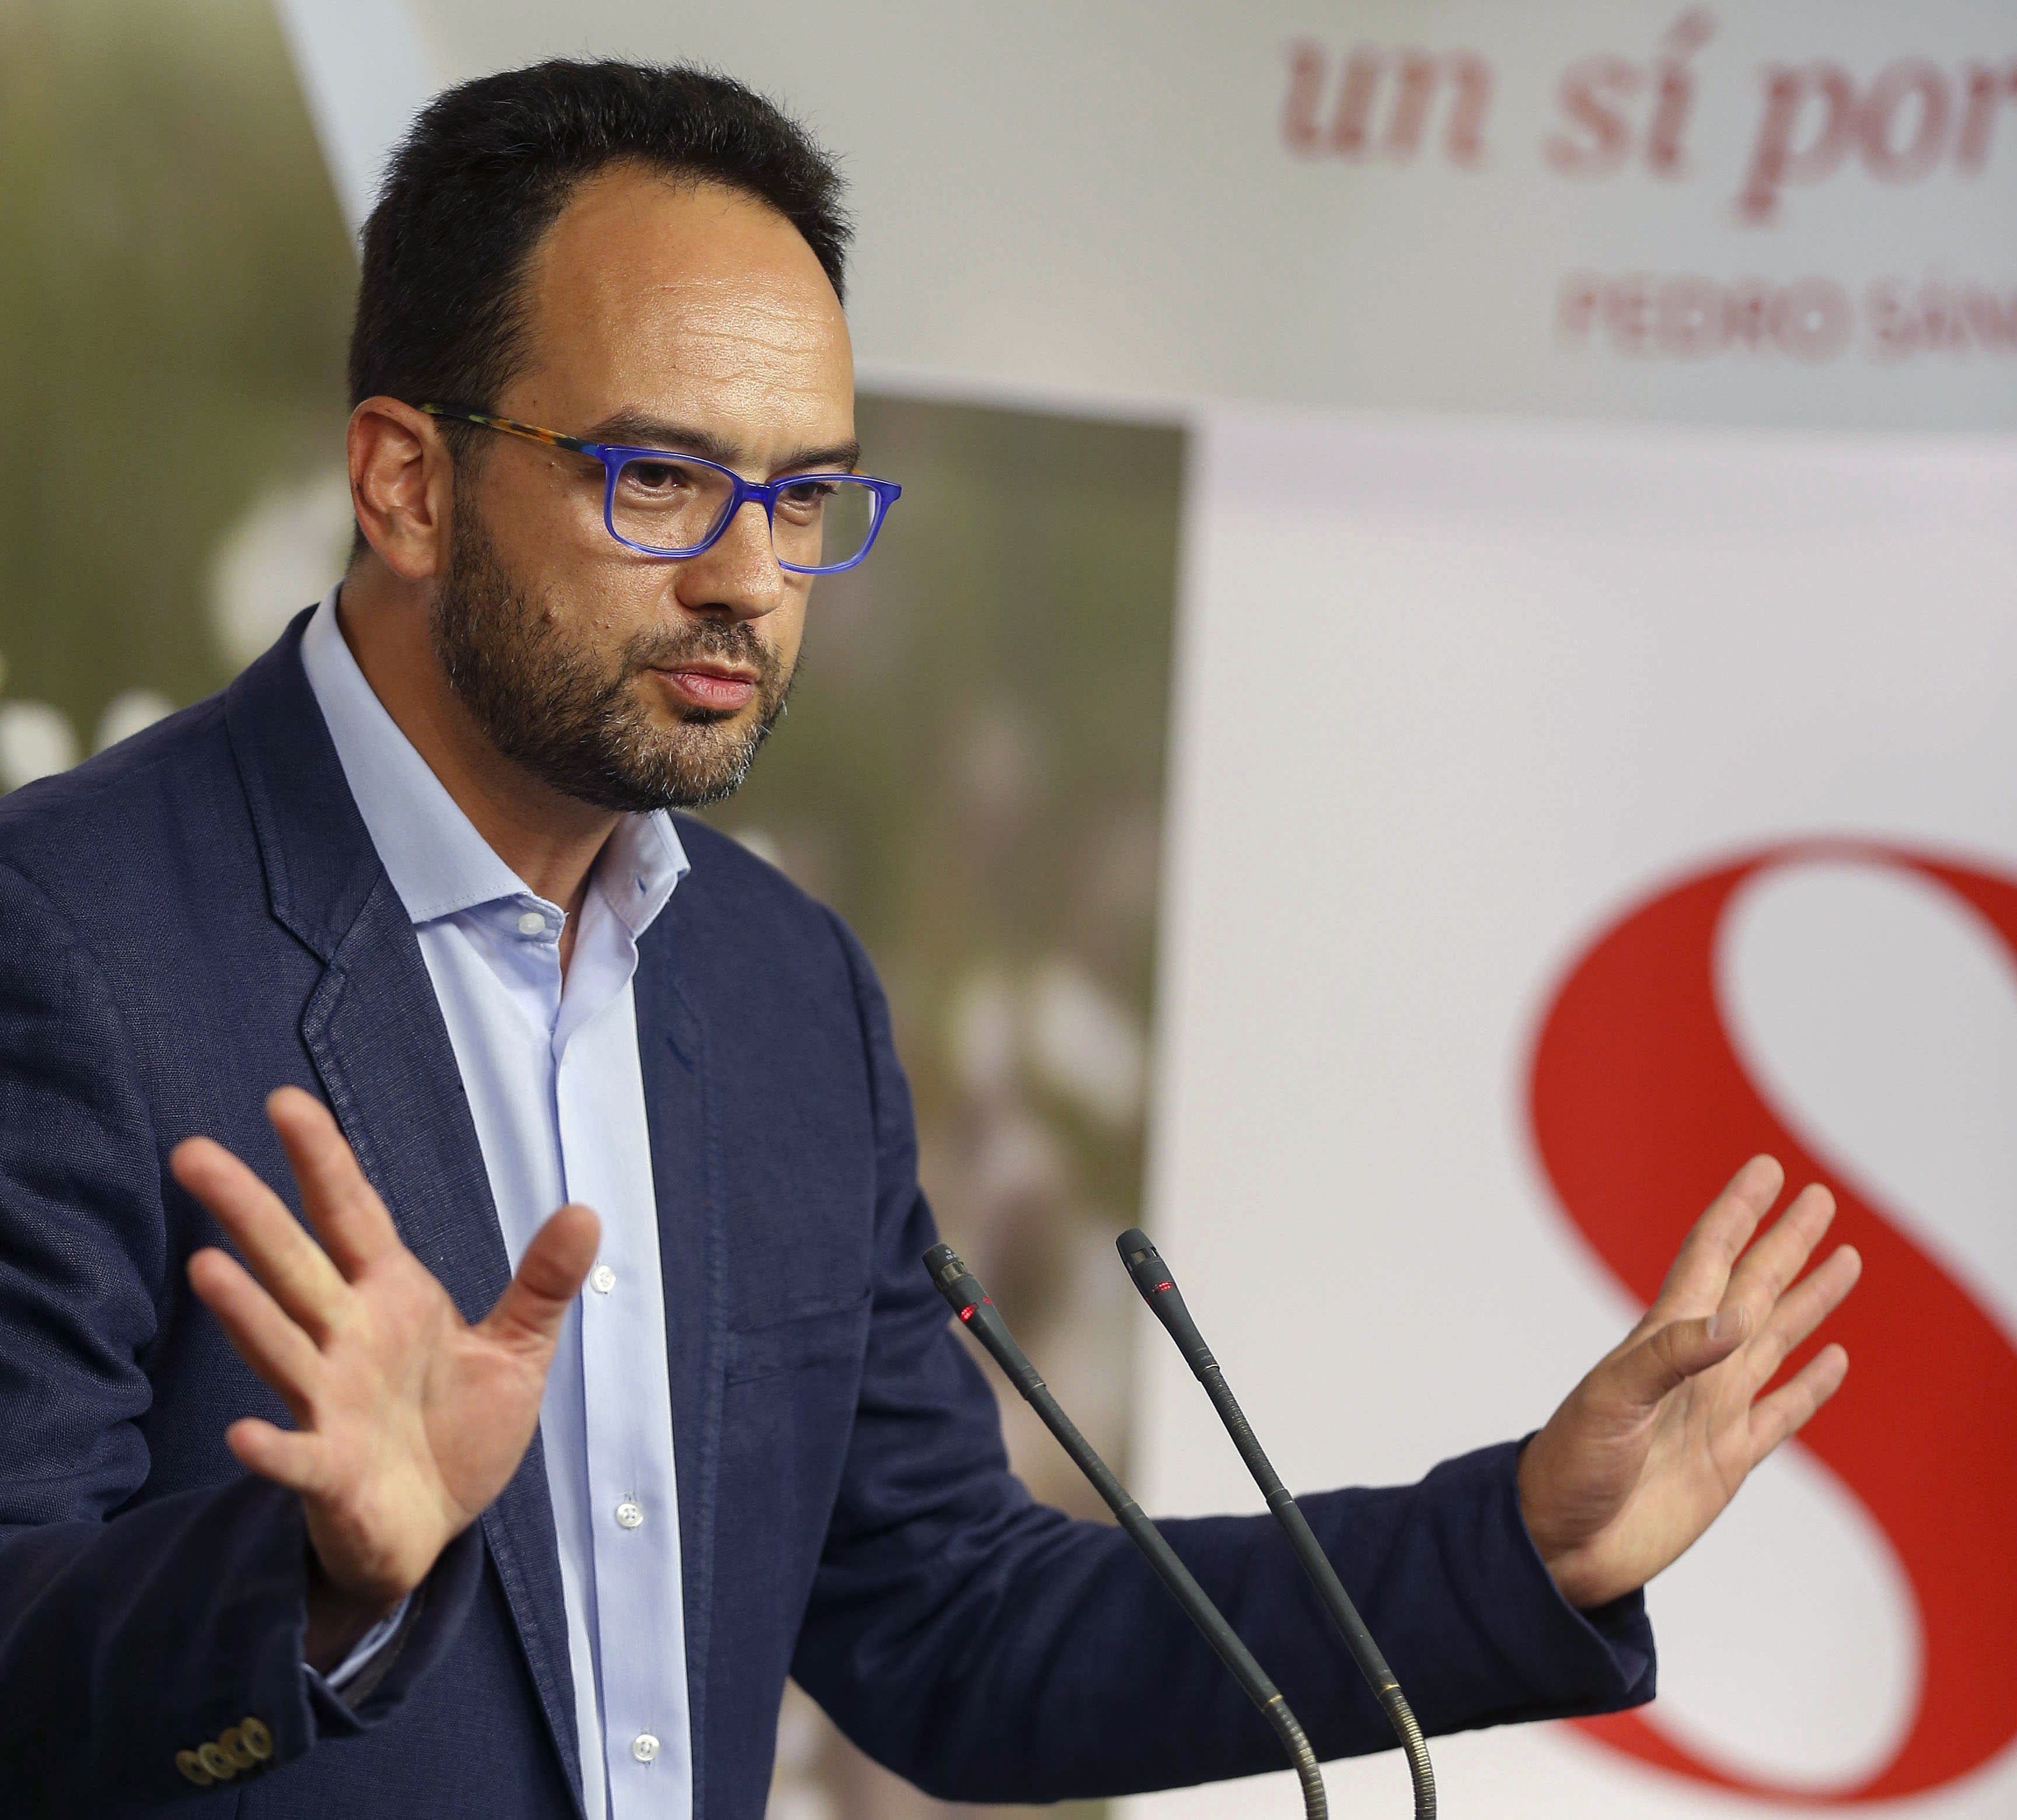 El 'no' del PSOE a Rajoy crea contradicciones internas